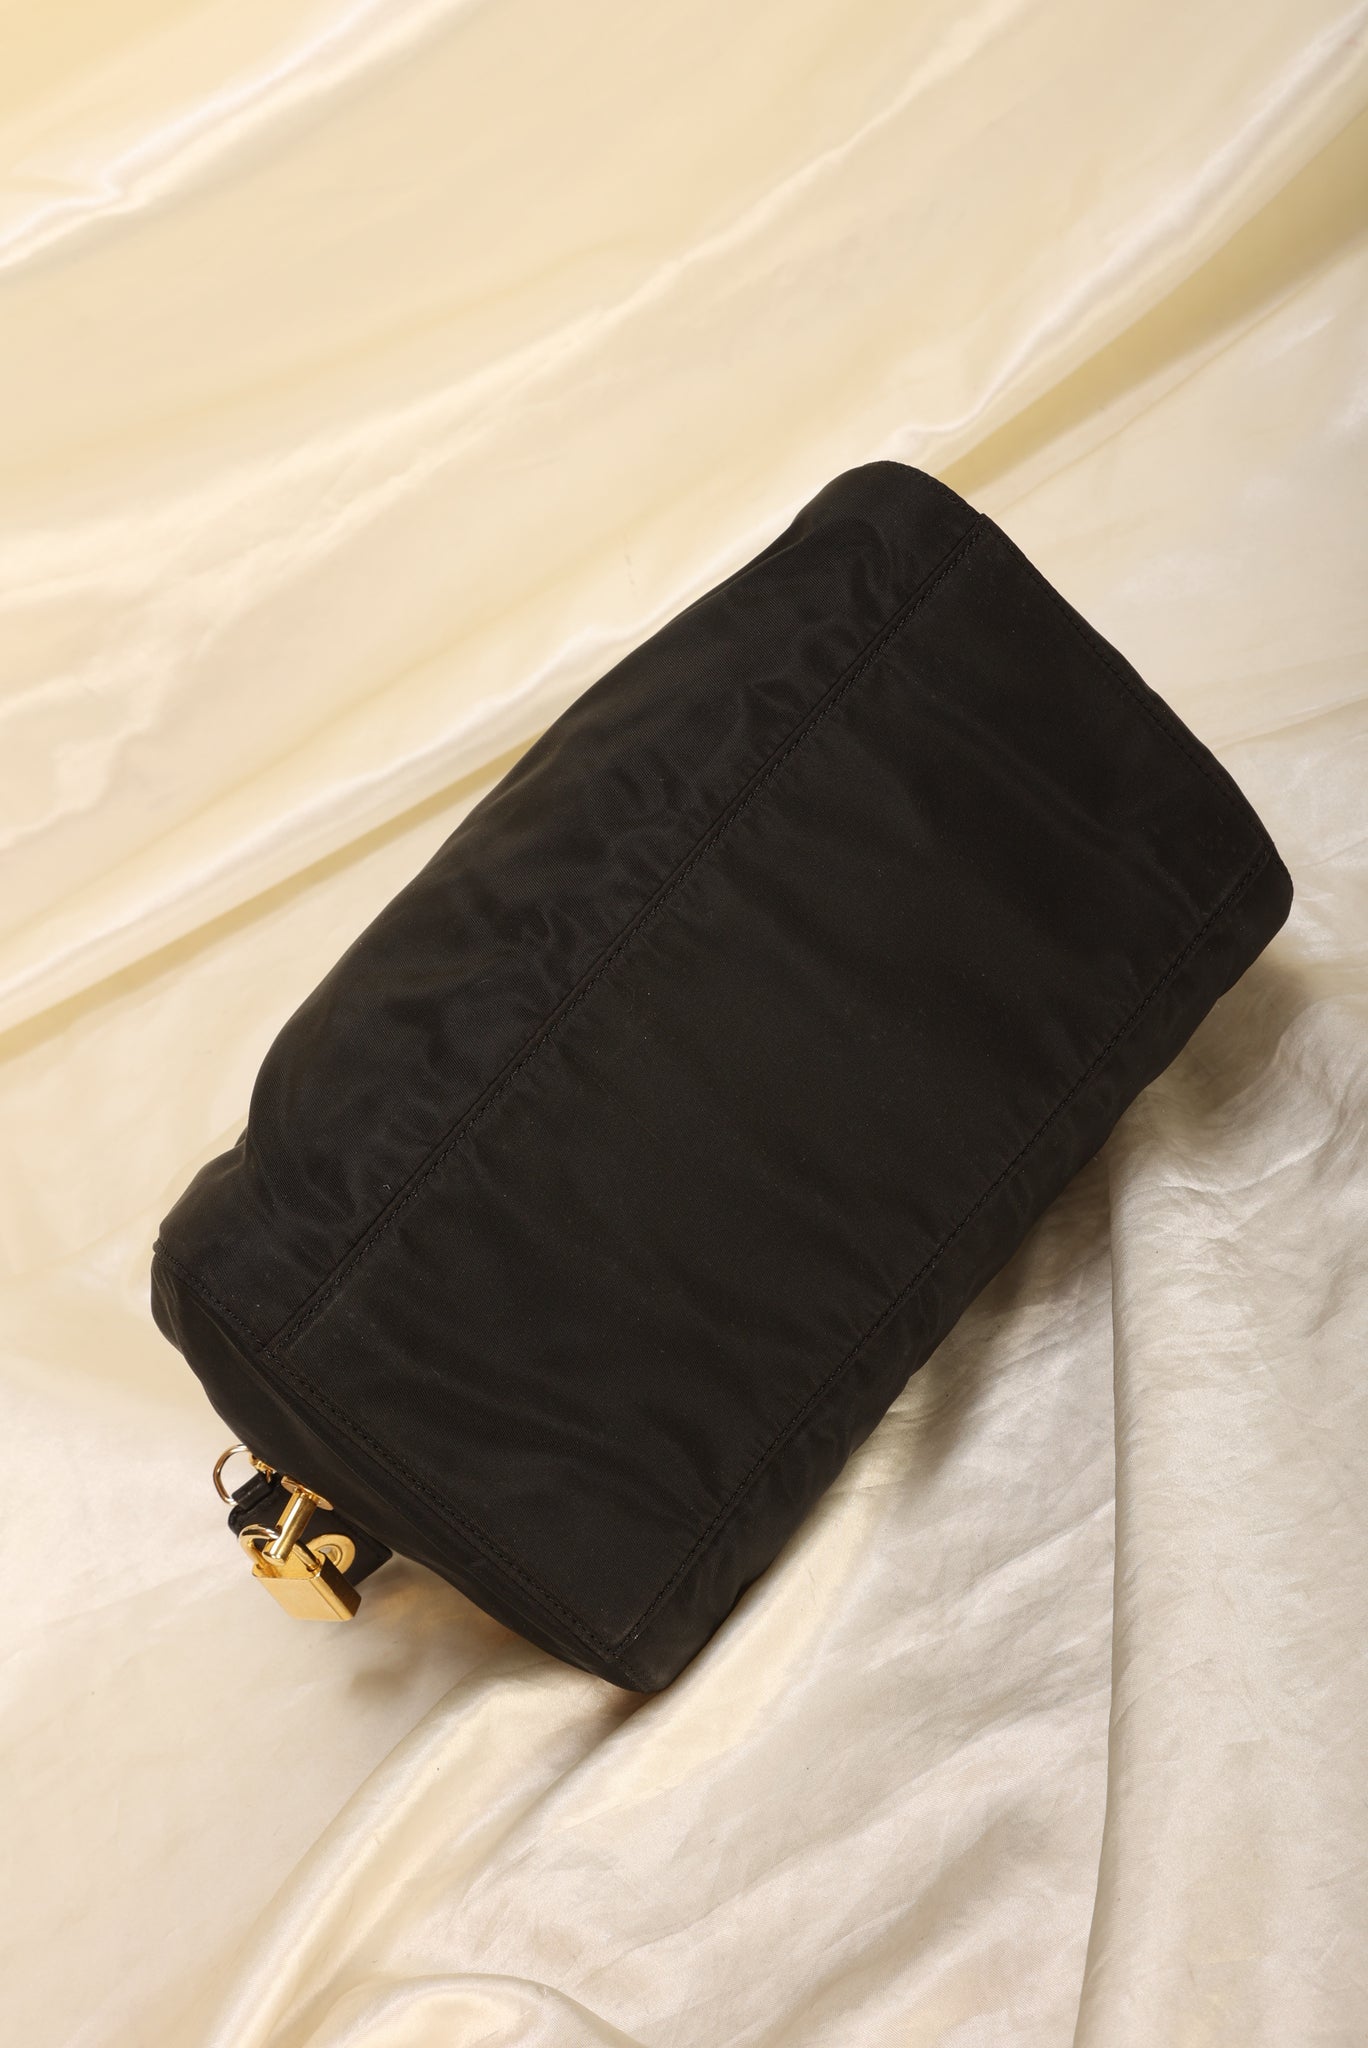 Rare Prada Nylon Bowler Bag